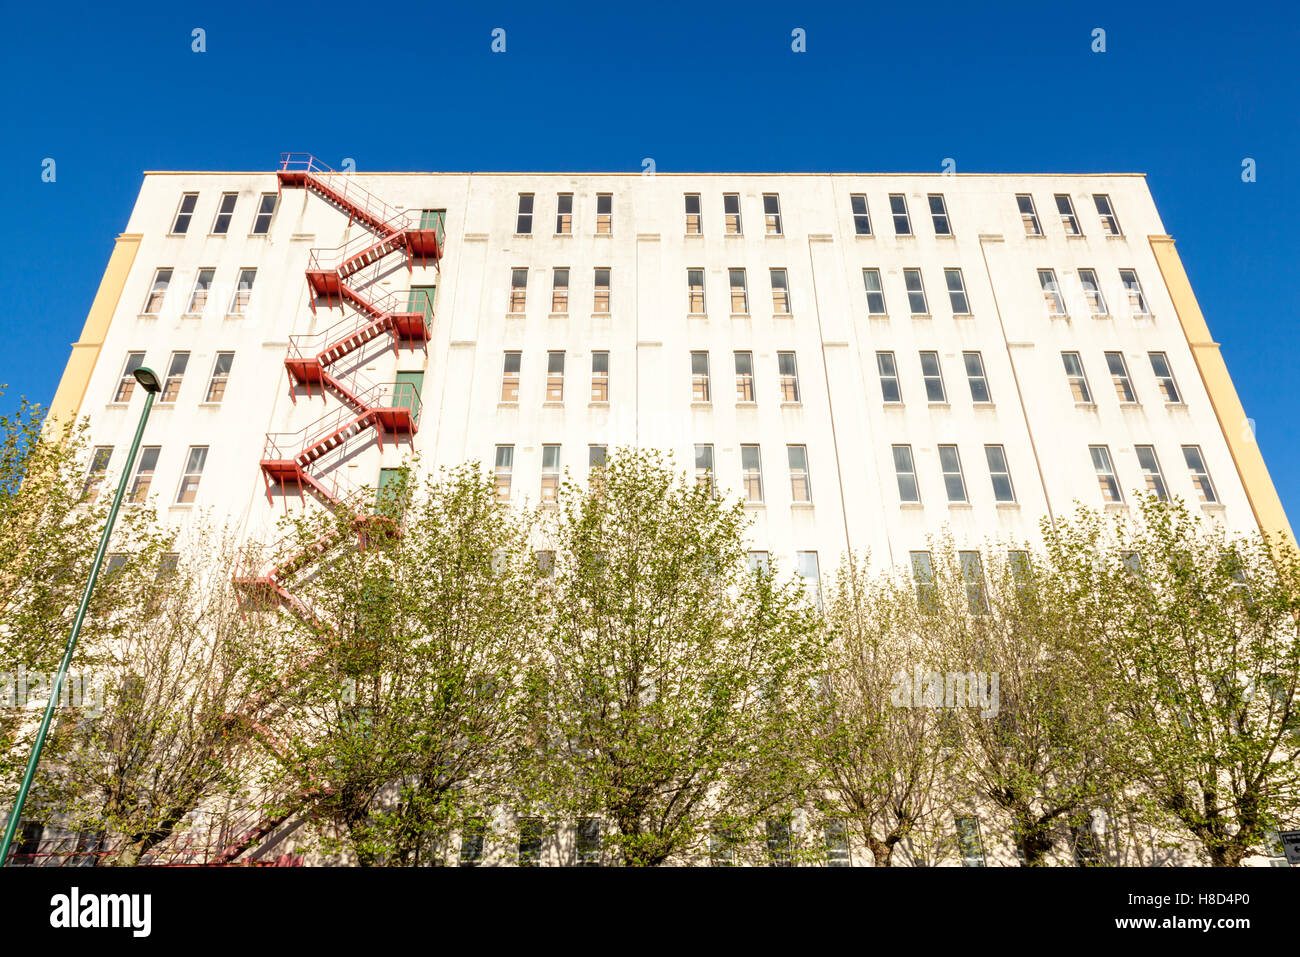 Escaliers Et échelle De Sortie De Secours, En Métal, Sur Un Immeuble De  Brique Résidentiel Moderne Nord-américain Typique De Mont Image stock -  Image du nordique, américain: 140844923